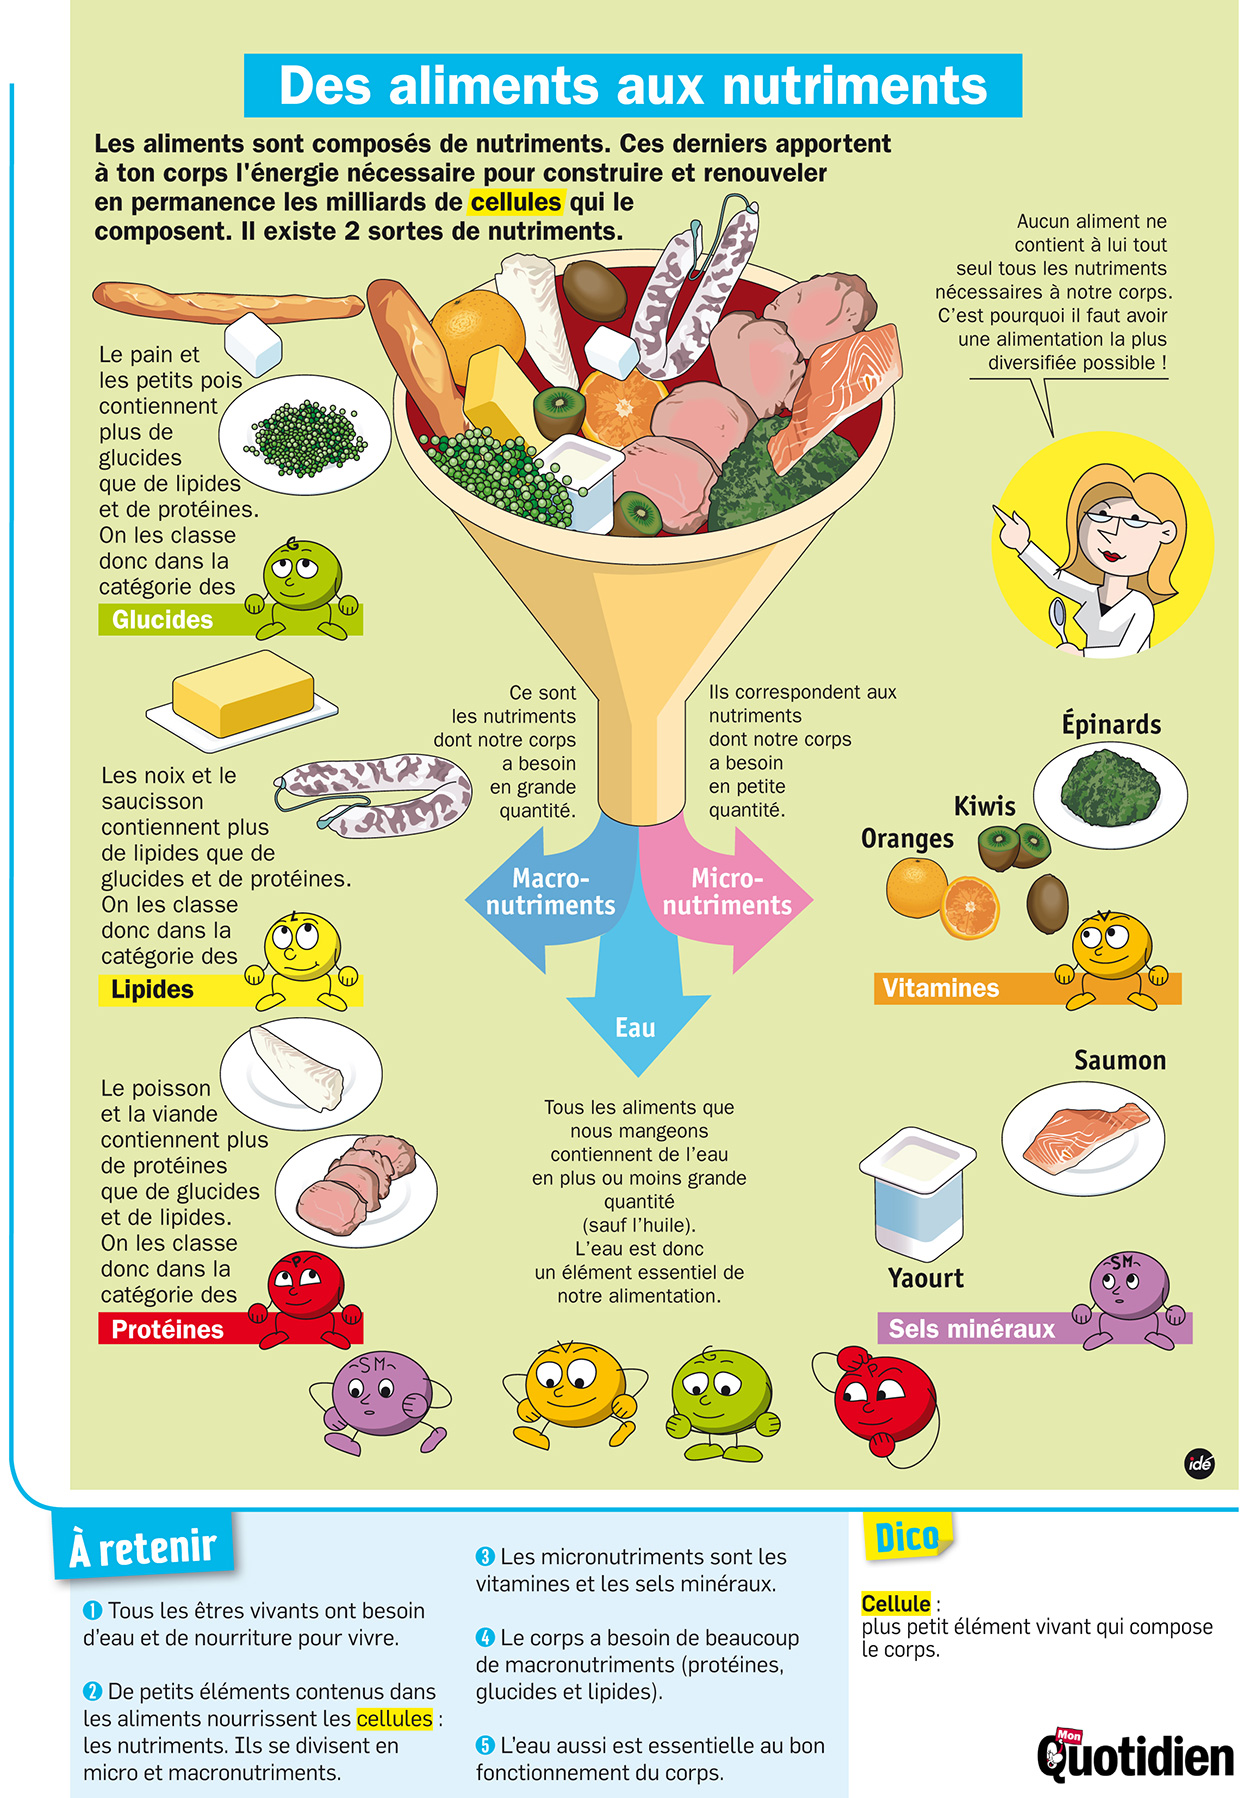 Infographie Mon Quotidien : Des aliments aux nutriments